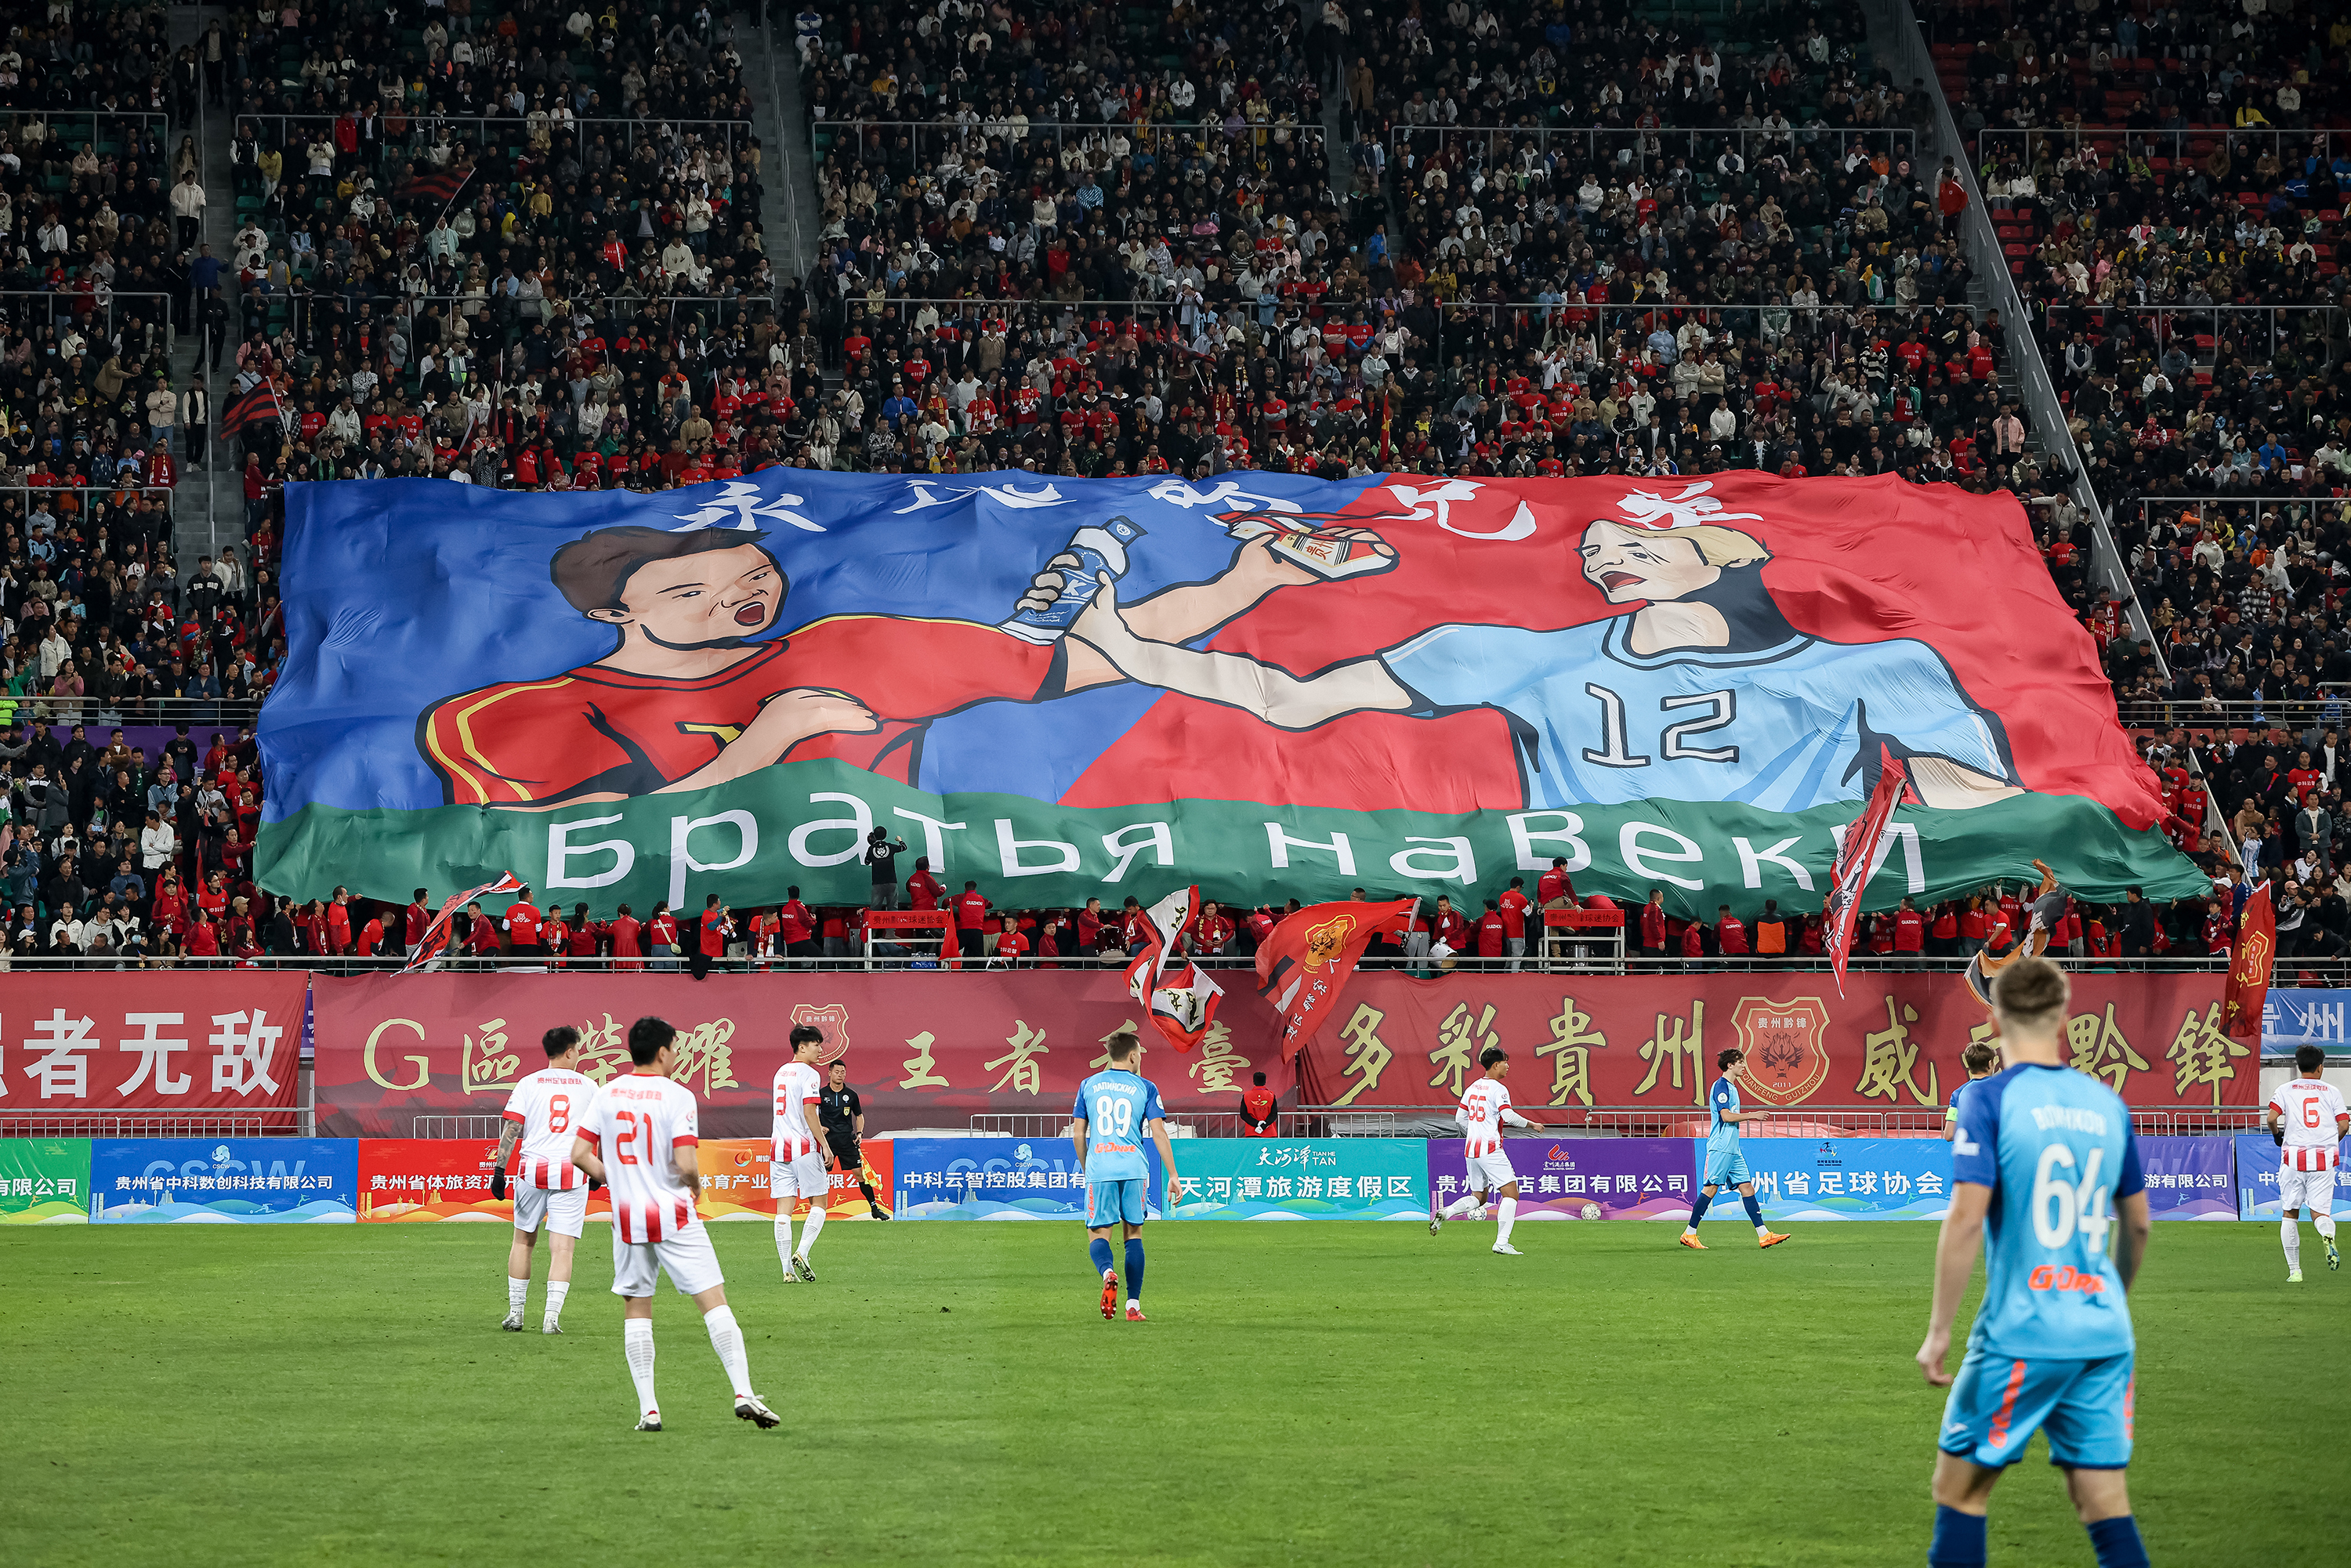 泽尼特足球俱乐部感谢中国球迷热情支持，盼未来携手合作创造更辉煌时刻